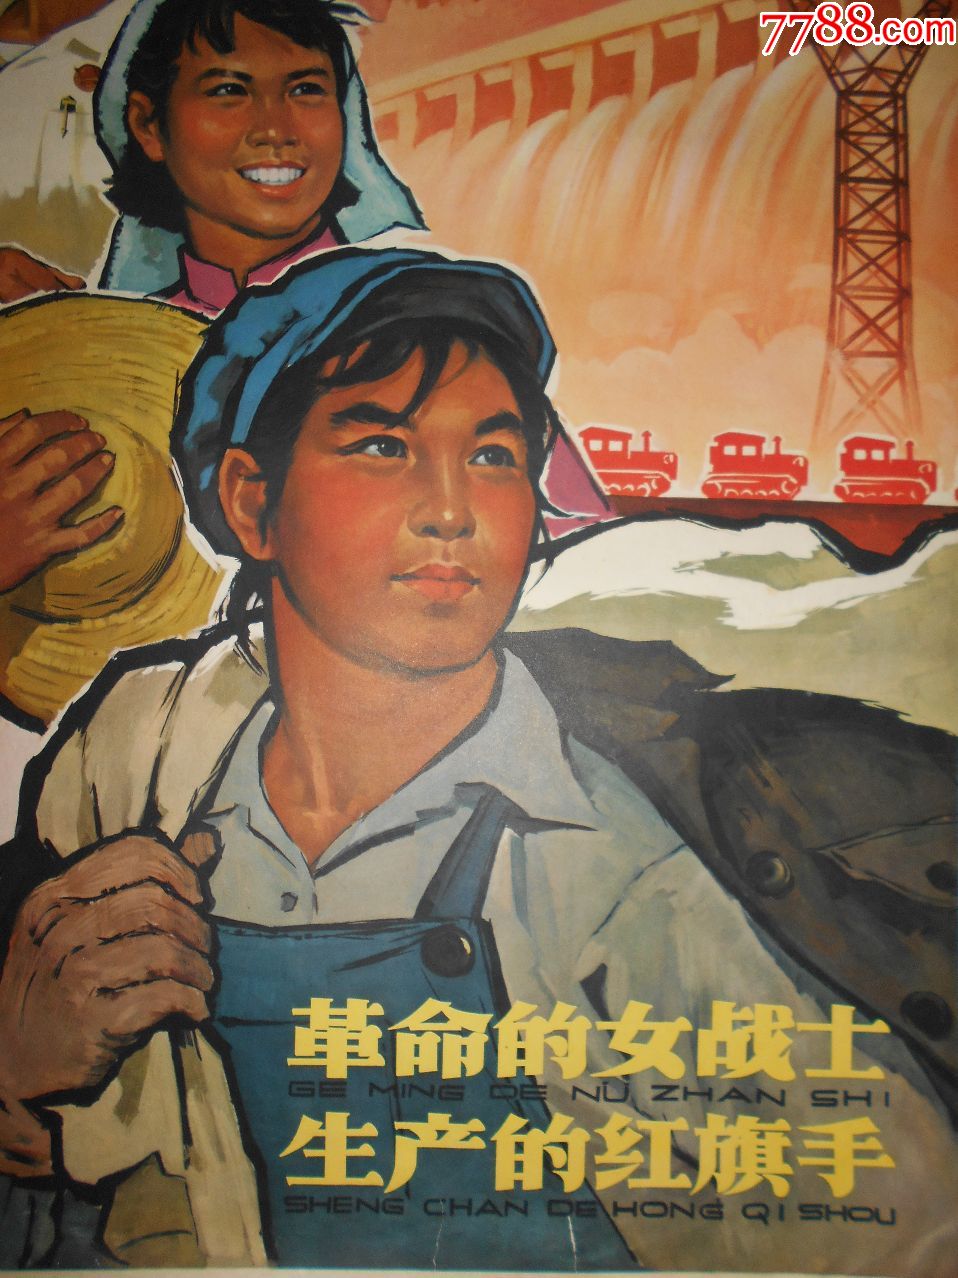 革命的女战士生产的红旗手-年画/宣传画-7788文房四宝收藏